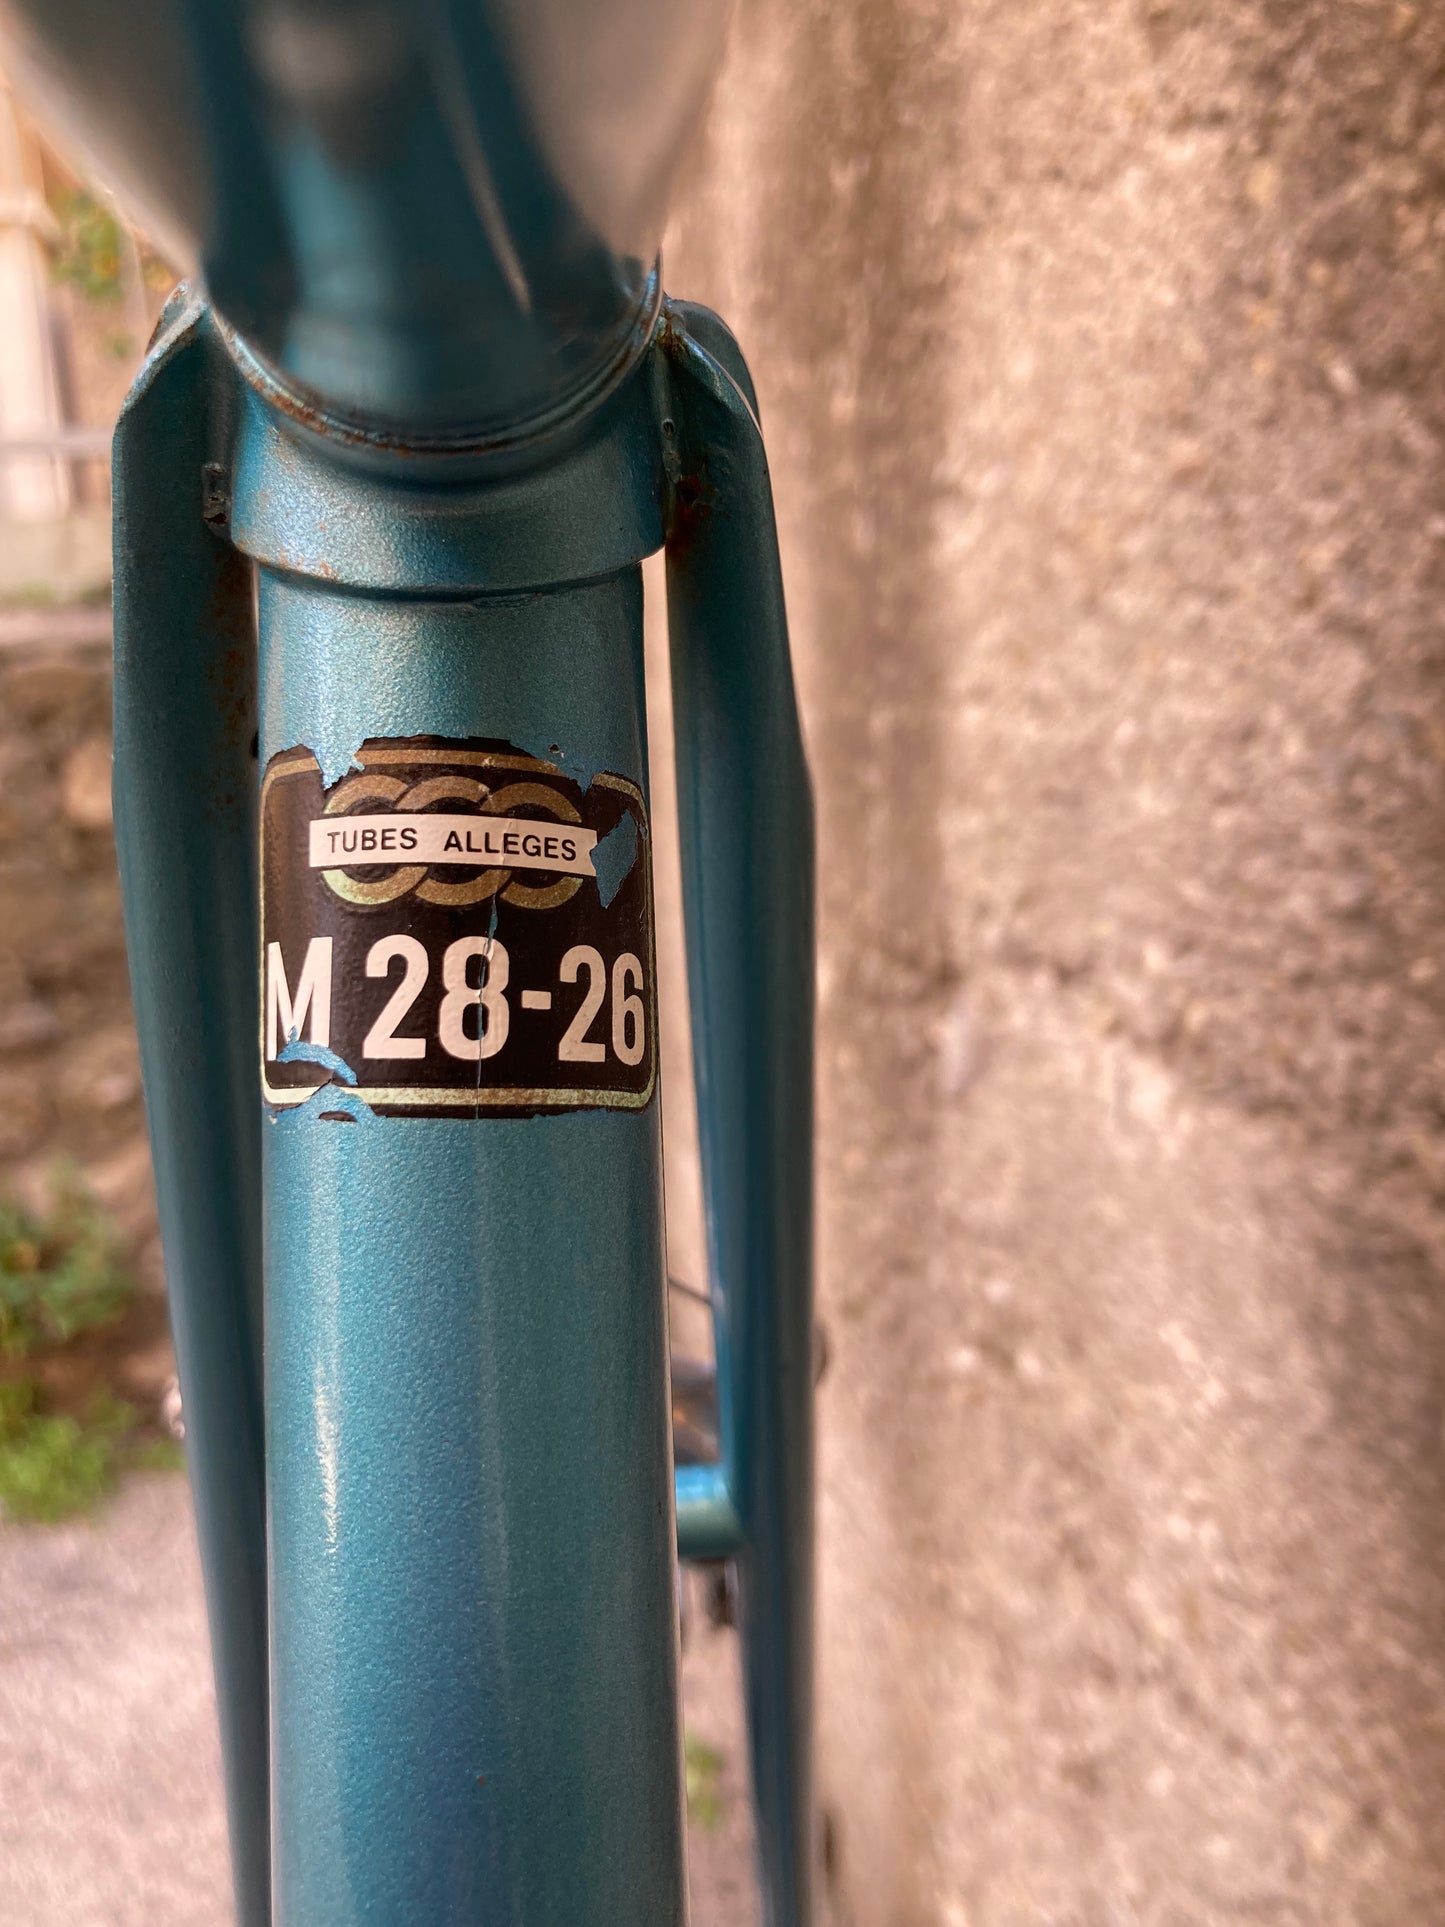 Bicicletta vintage Mercier in acciaio tg. 53. Anni '70.